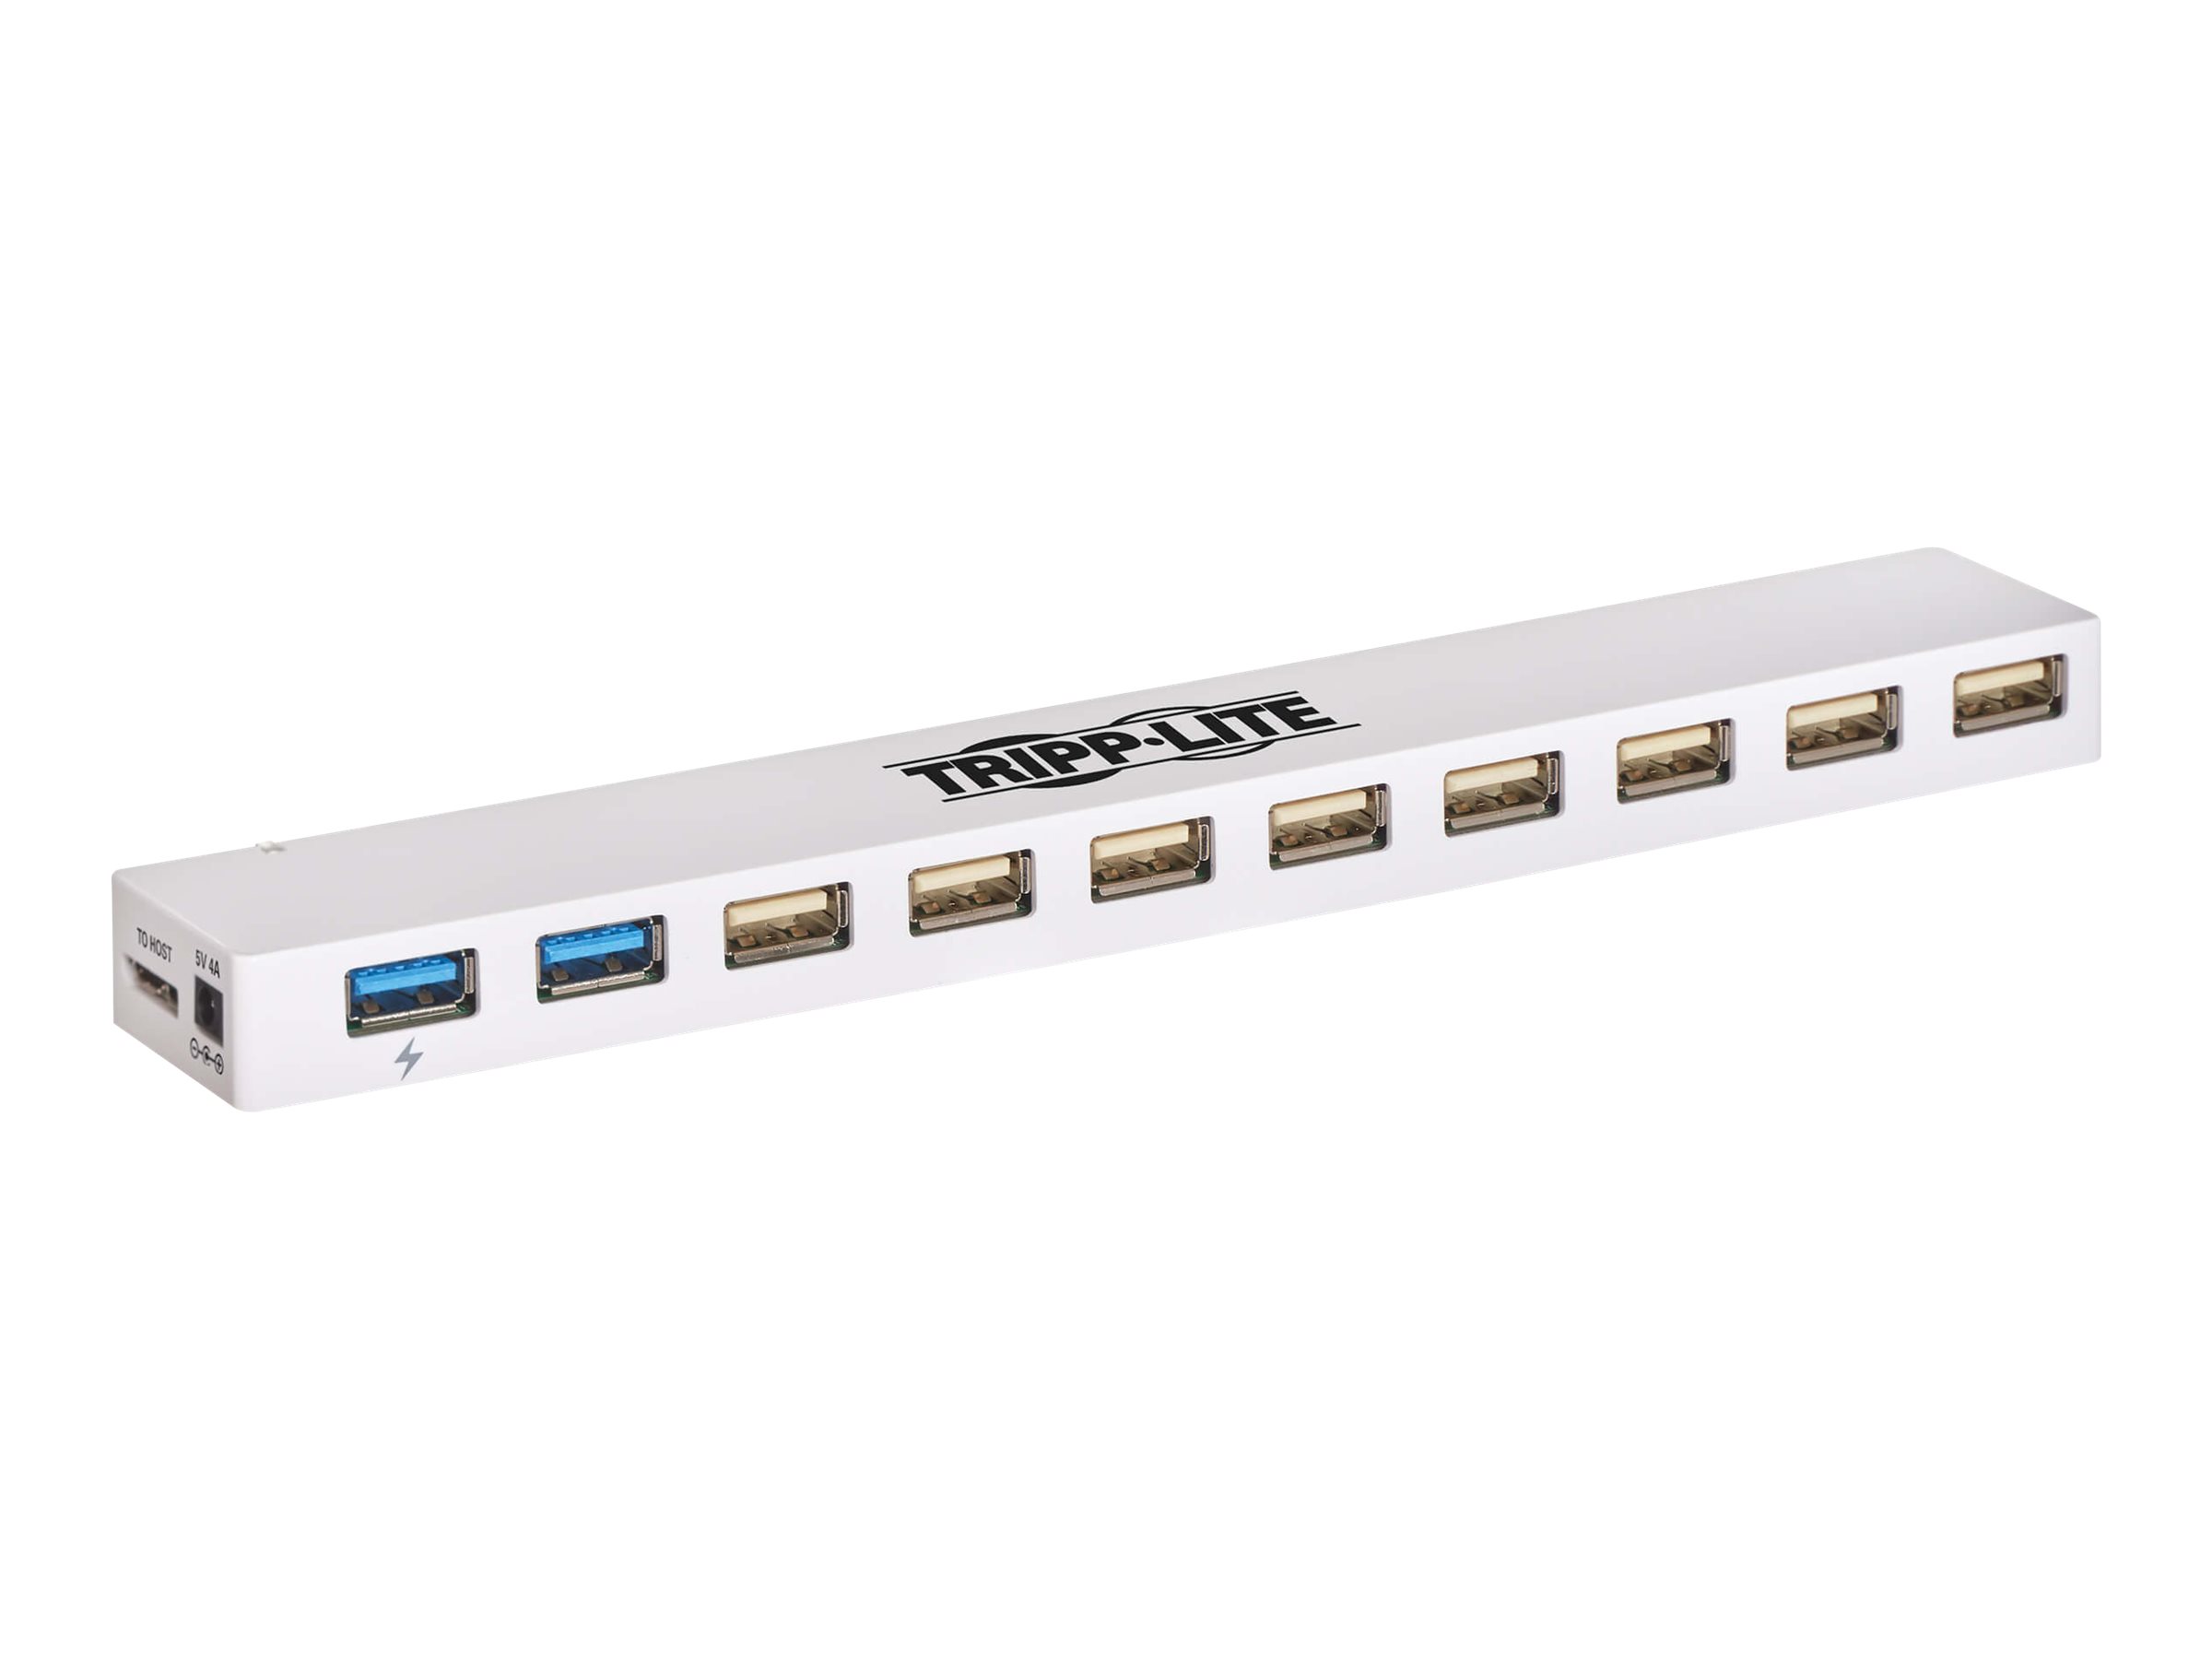 Tripp Lite 10-Port USB 3.0 / USB 2.0 Combo Hub - USB Charging, 2 USB 3.0 & 8 USB 2.0 Ports - Hub - 2 x SuperSpeed USB 3.0 + 8 x 